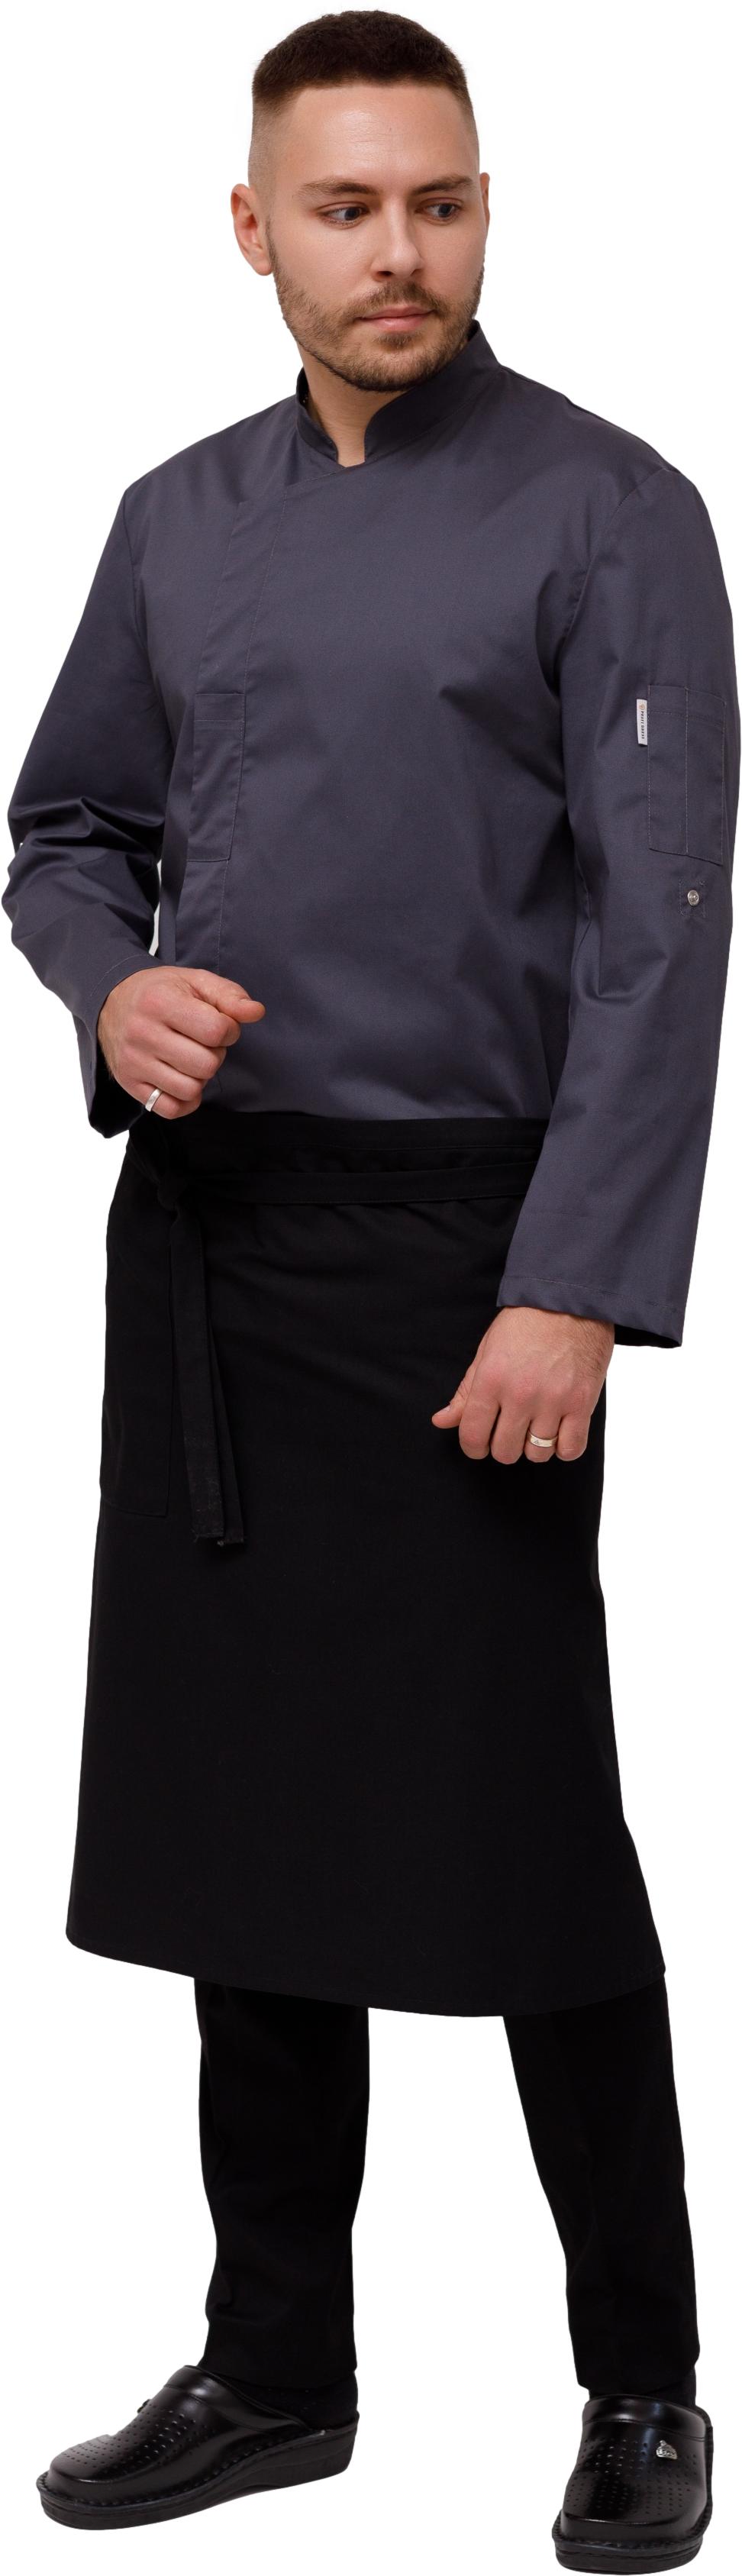 Комплект для повара LINCOLN - китель / фартук / брюки мужской темно серый